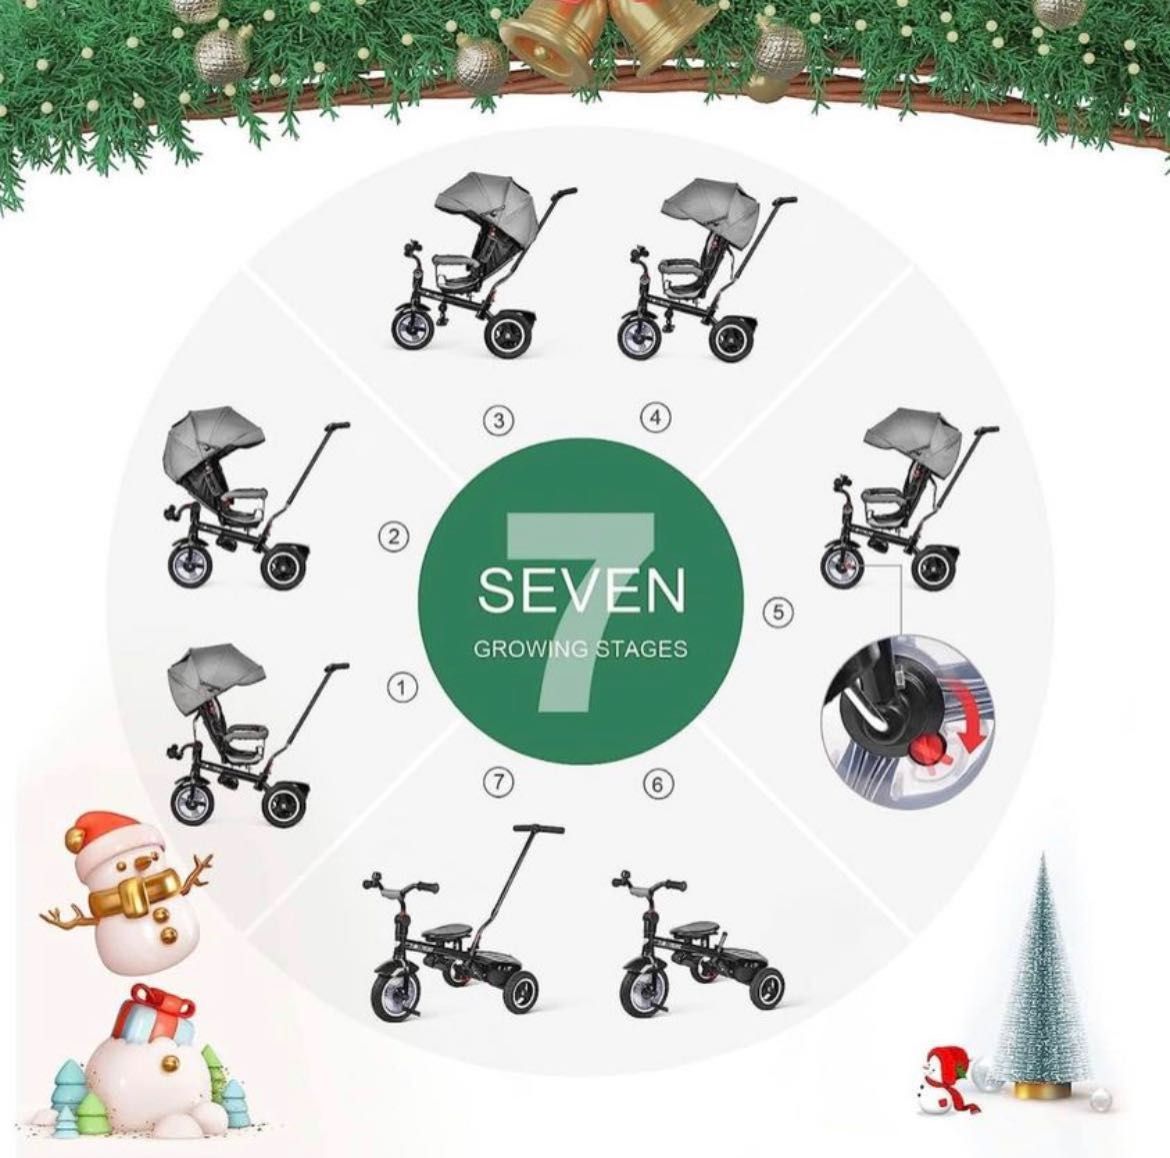 Triciclo evolutivo 7 em 1, para bebés e crianças